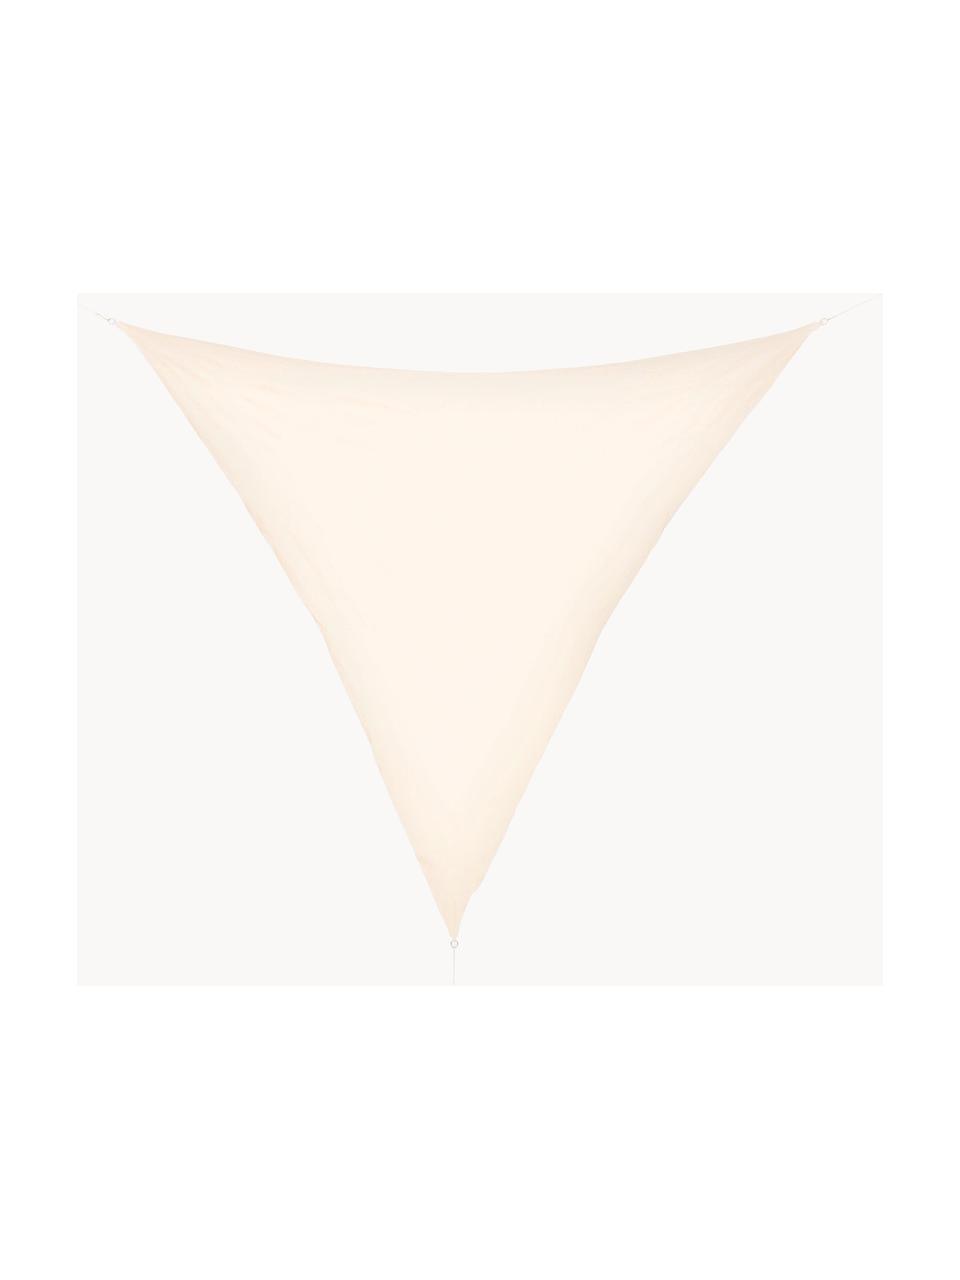 Markiza Triangle, Biały, S 360 x D 360 cm